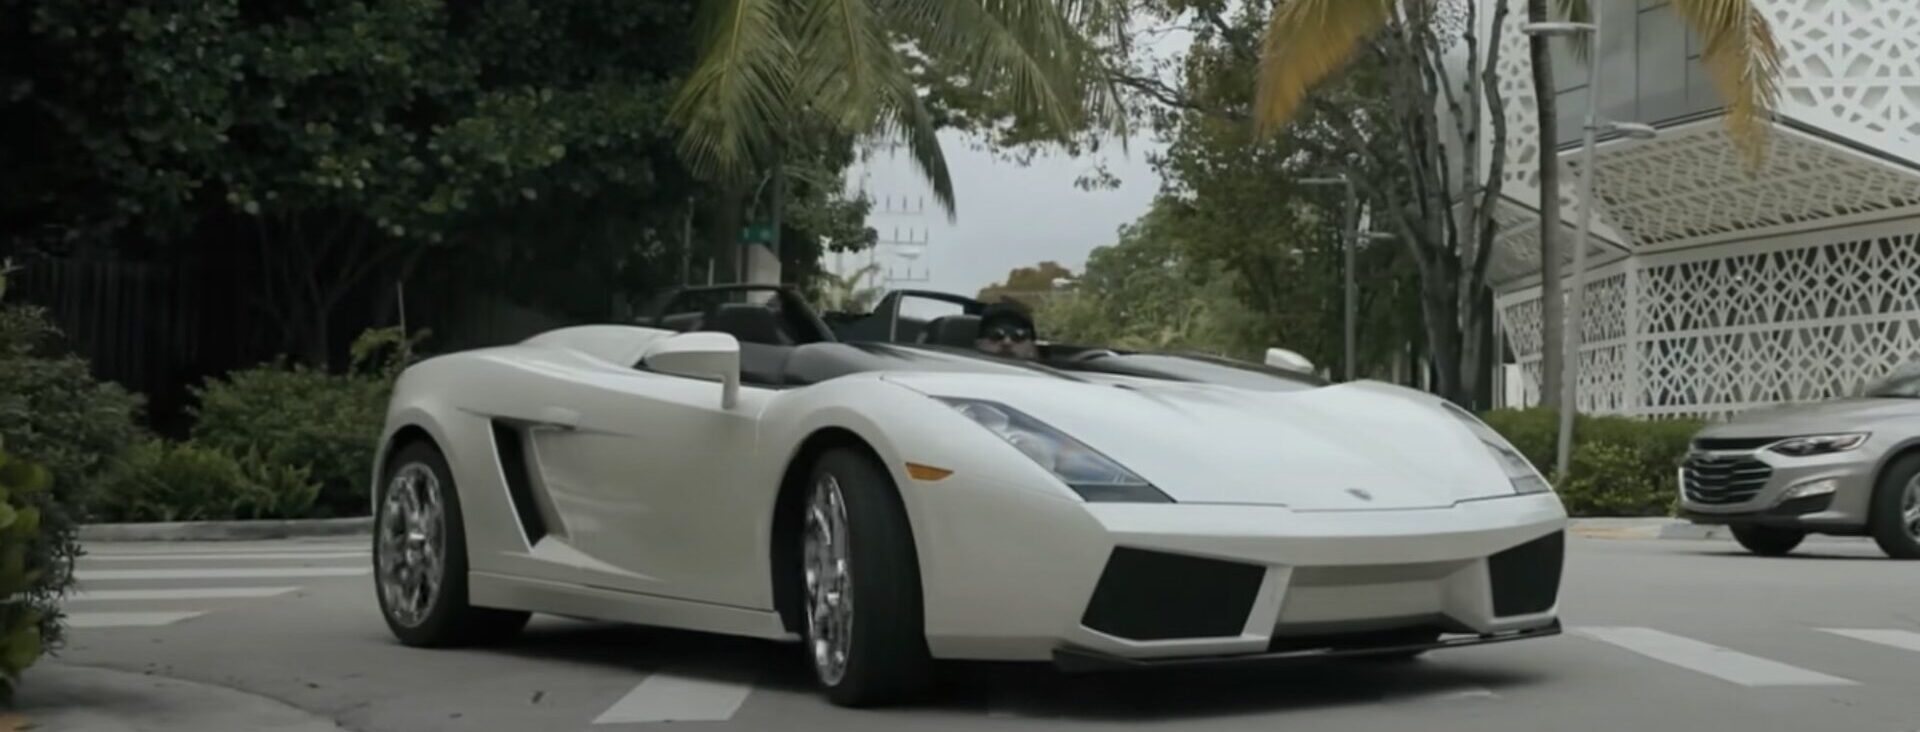 Lamborghini планировала построить 100 таких Gallardo, но внезапно решила отказаться от проекта